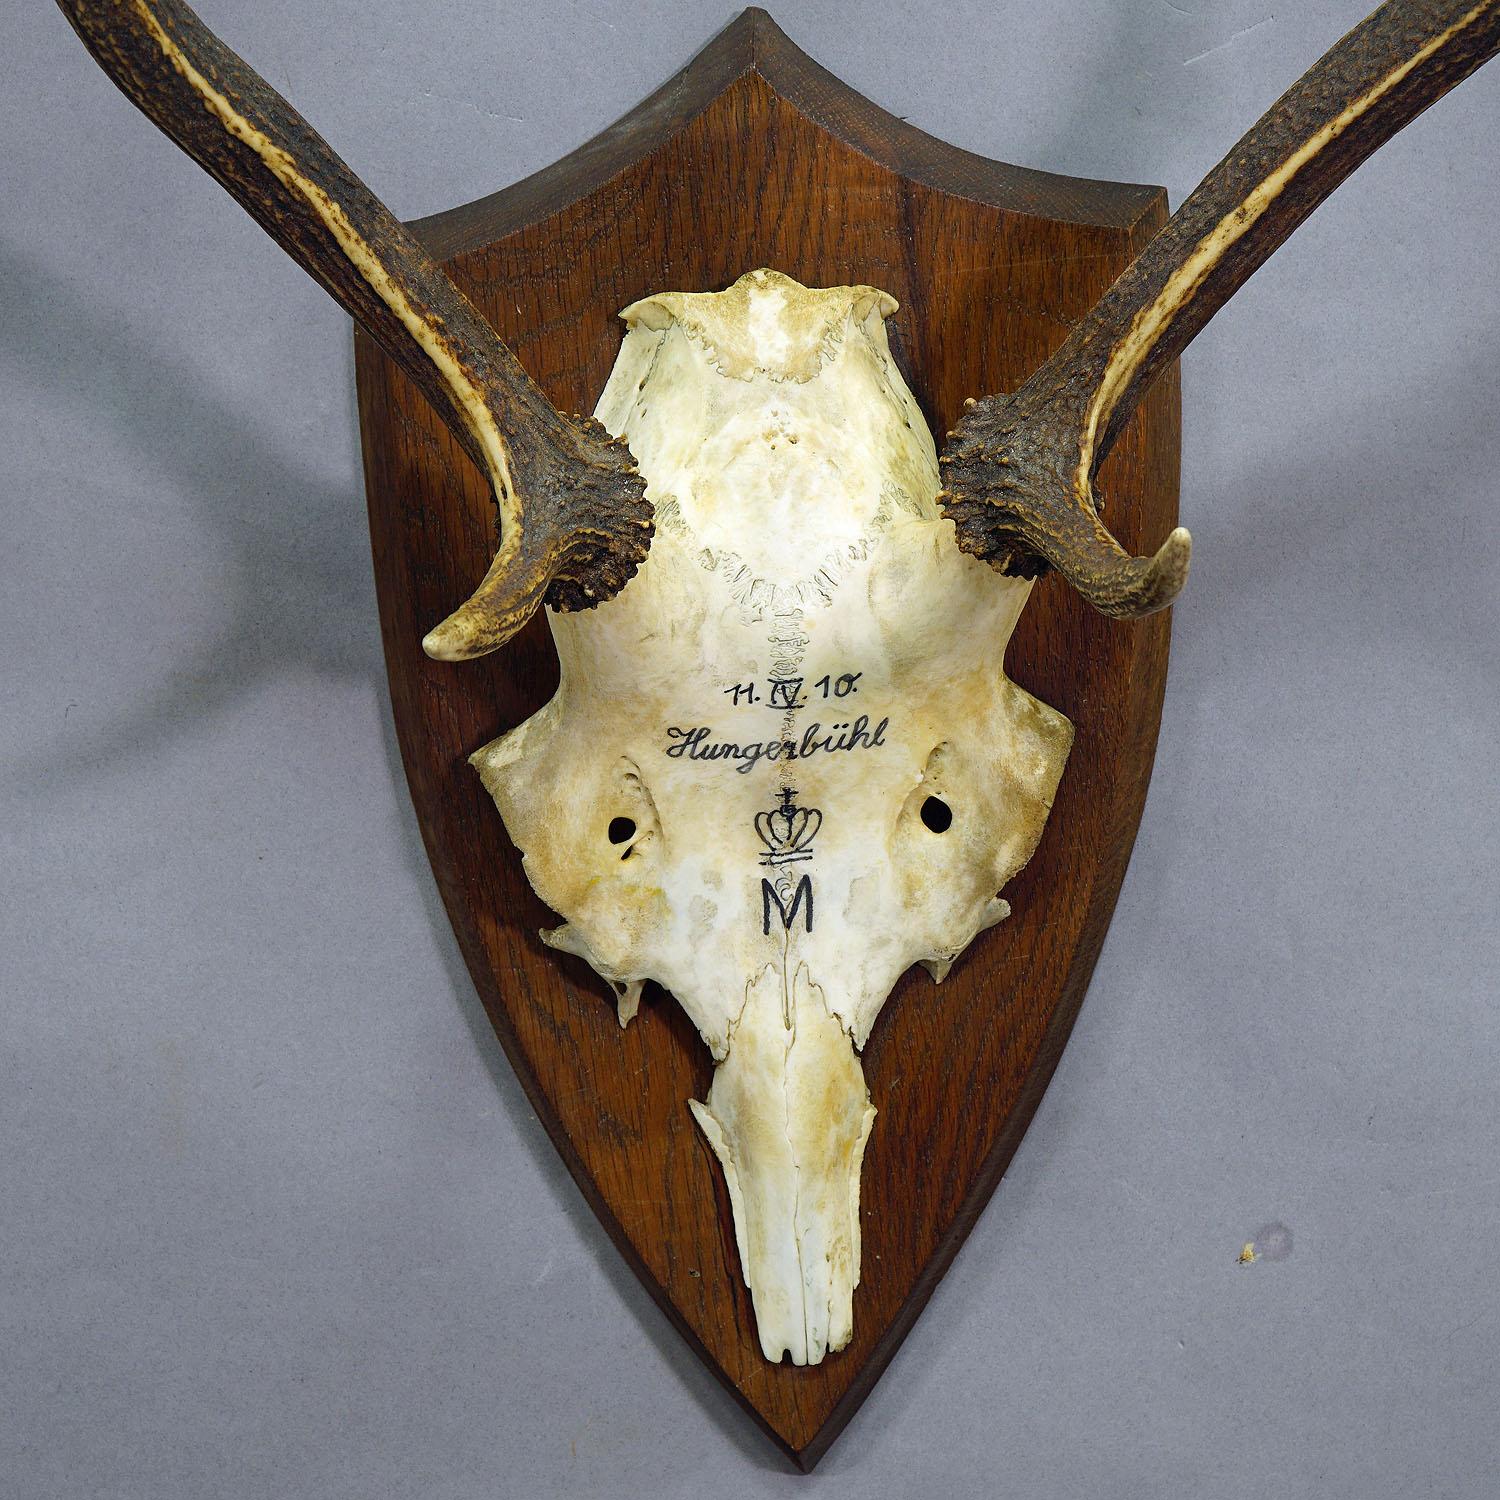 Rustic Antique Black Forest Deer Trophy from Salem - Germany, Hungerbuel 1910